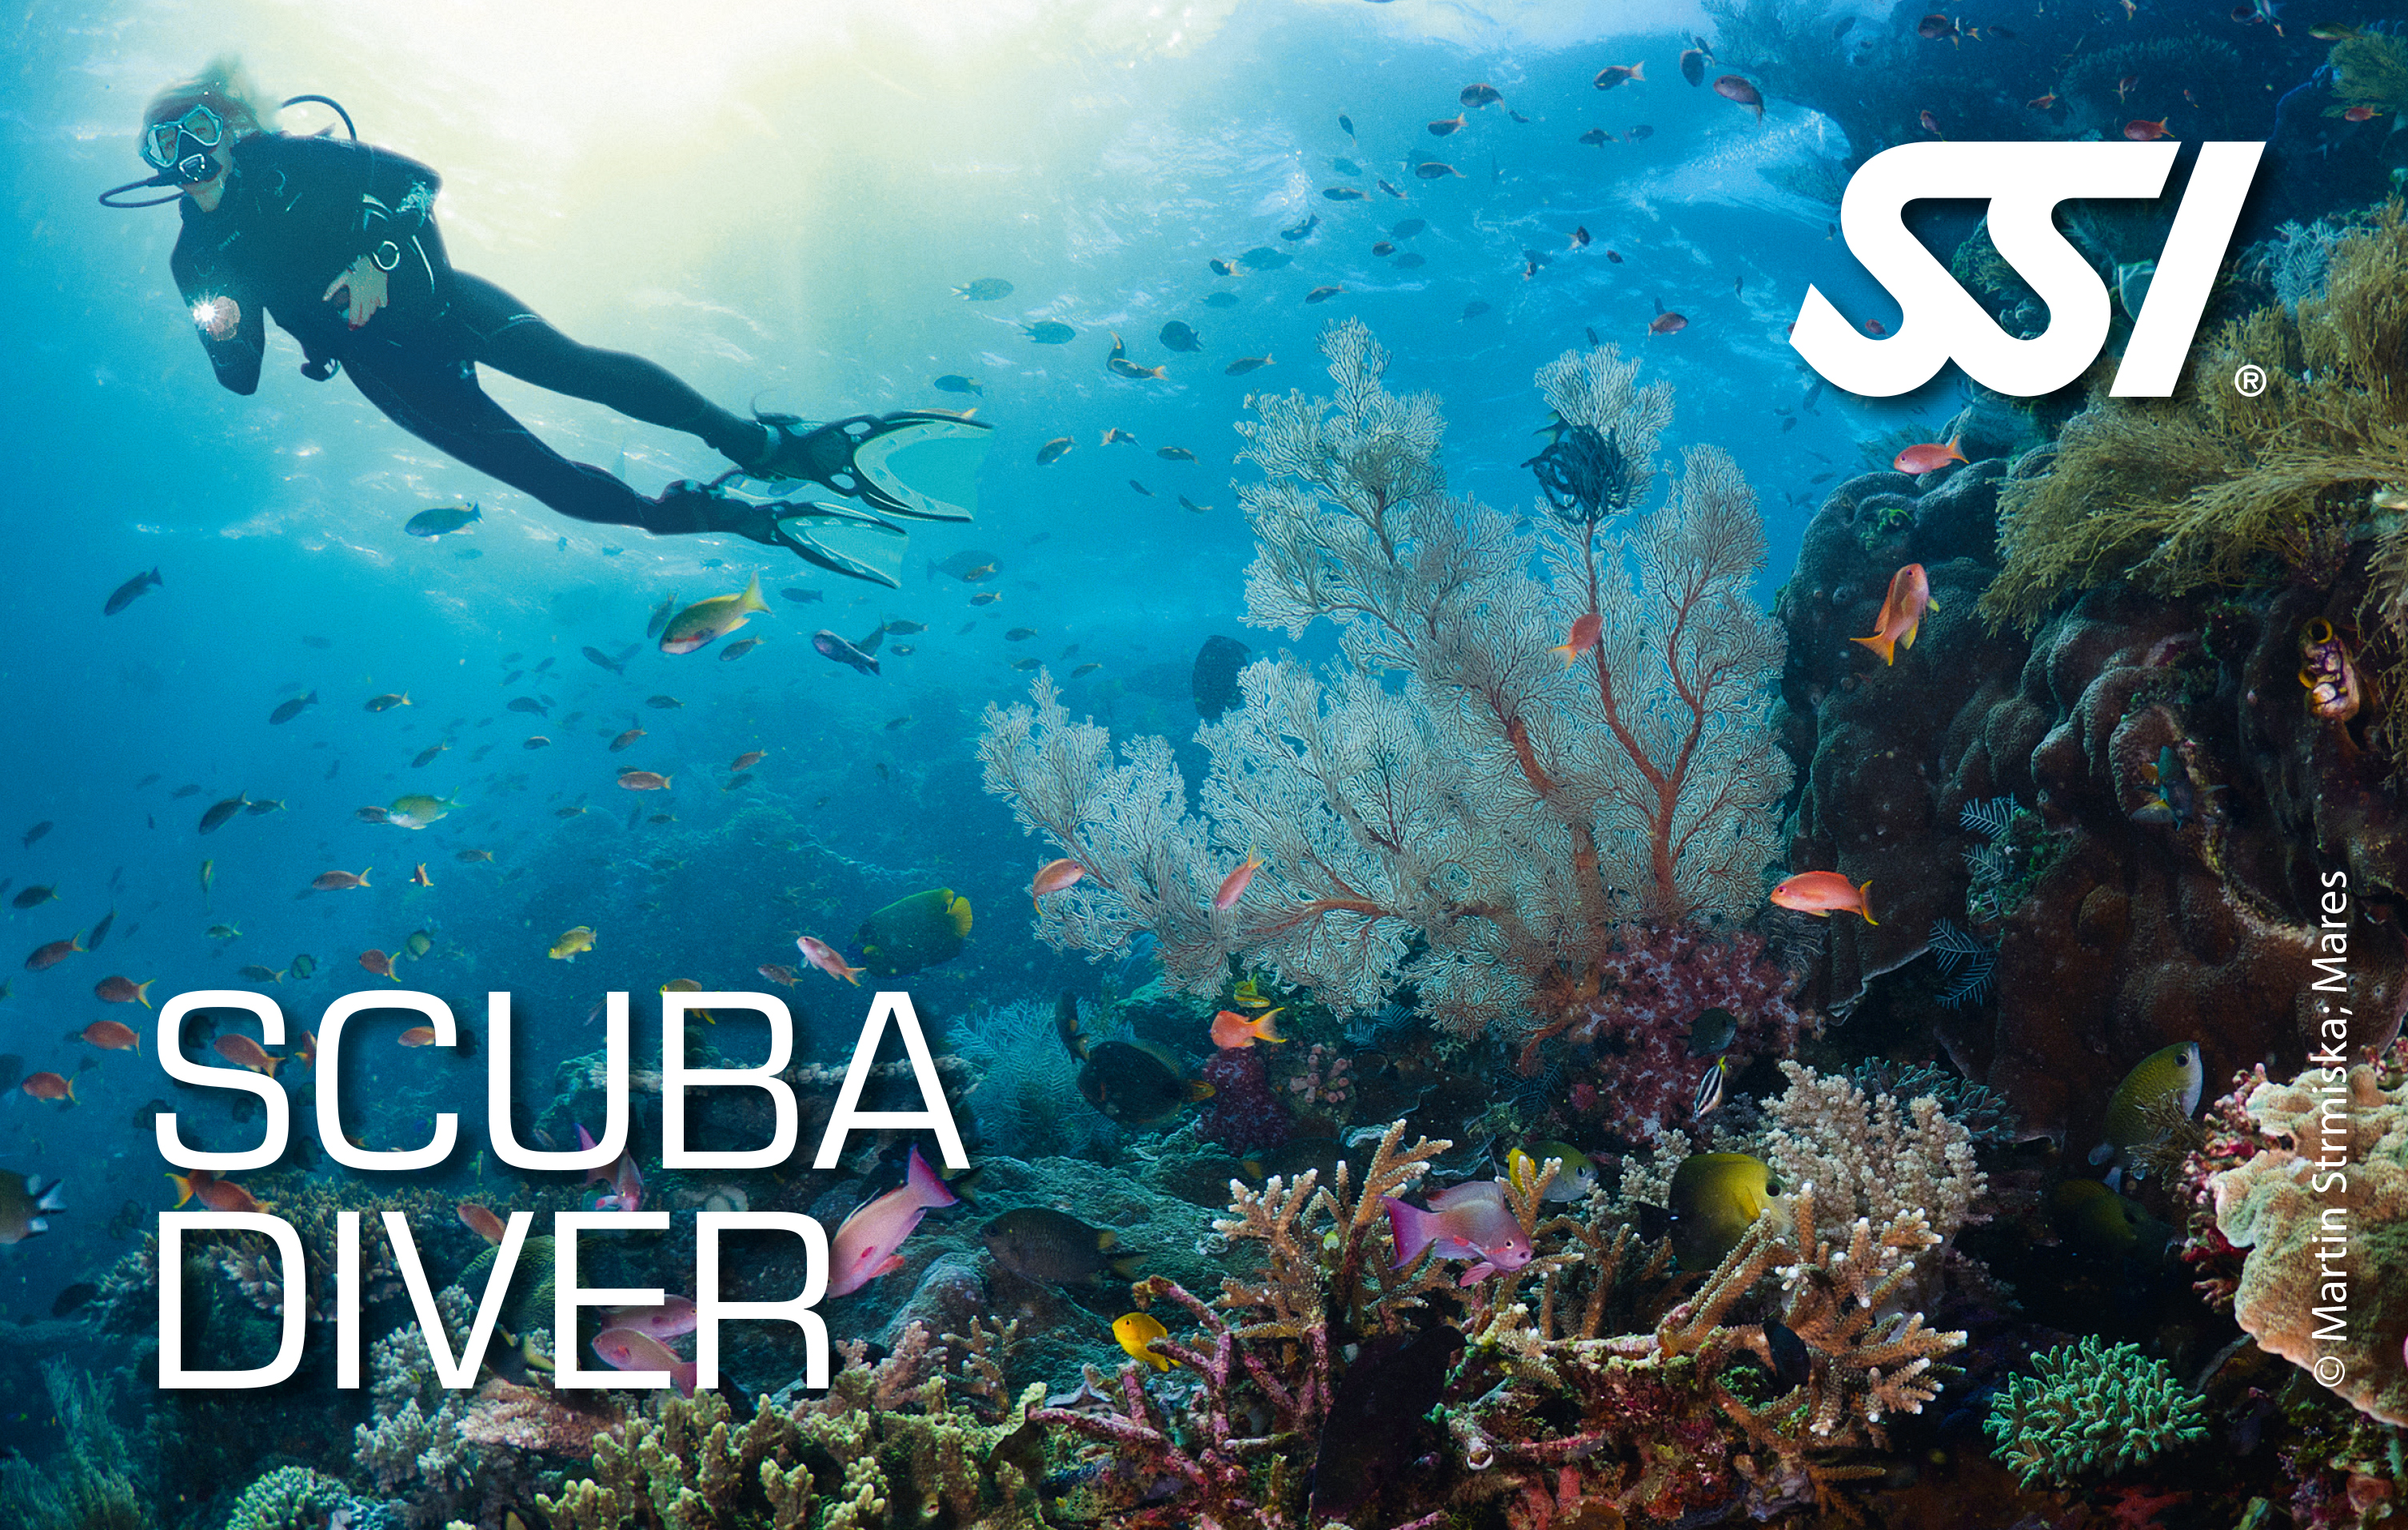 Scuba Diver SSI Into The Sea ASD